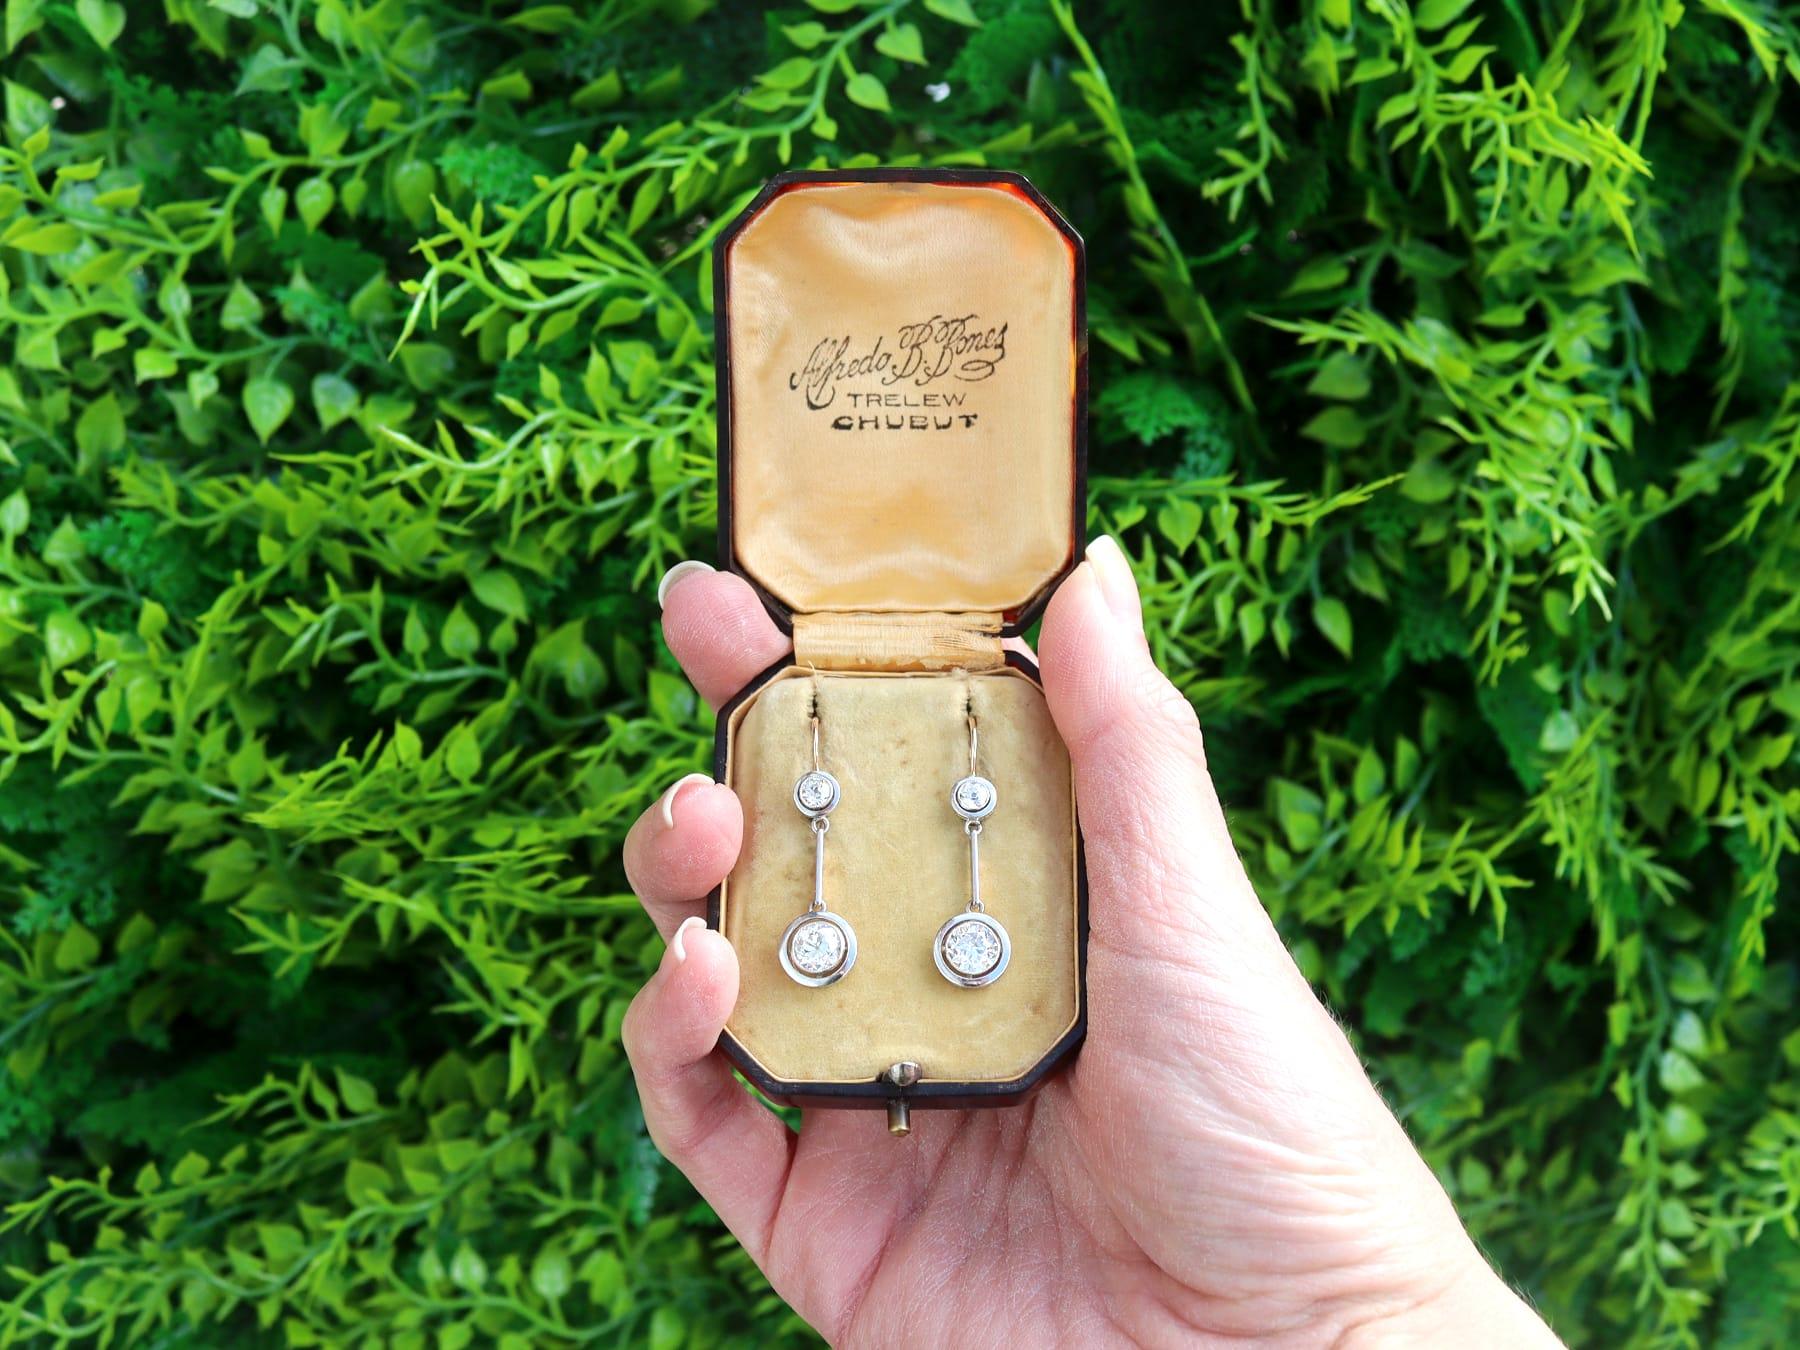 Ein atemberaubendes, feines und beeindruckendes Paar antiker Ohrringe aus 2,75 Karat Diamanten und 15 Karat Gelbgold und Platin - in einer Schachtel; Teil unserer vielfältigen antiken Schmucksammlungen

Diese atemberaubenden, feinen und